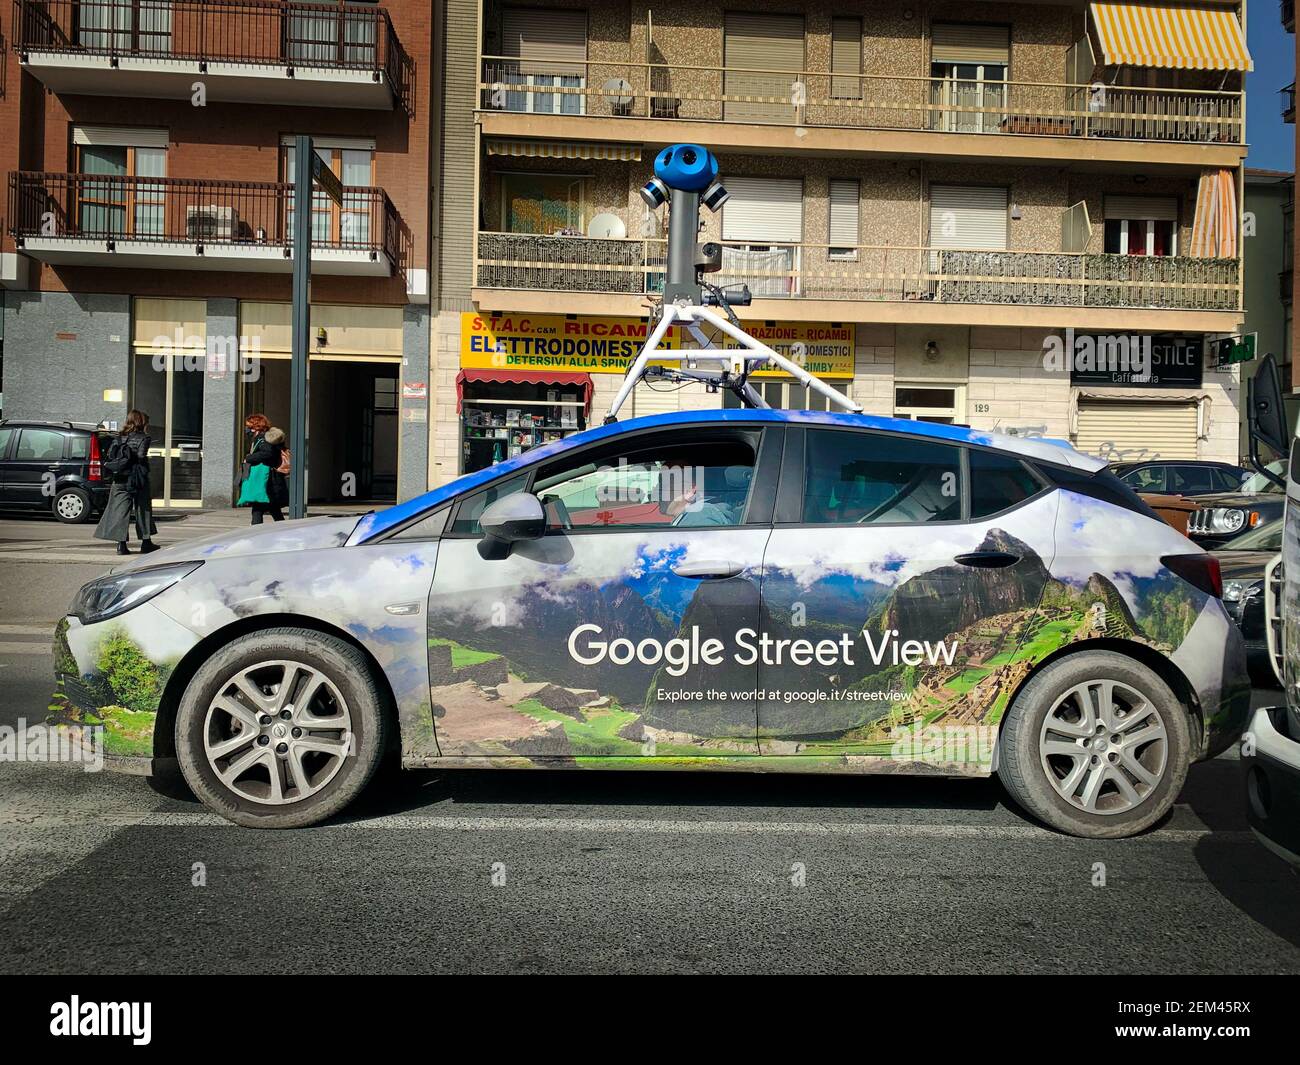 Un veicolo Google Street View utilizzato per mappare le strade di tutto il mondo attraversa la città. Torino, Italia - Gennaio 2021 Foto Stock